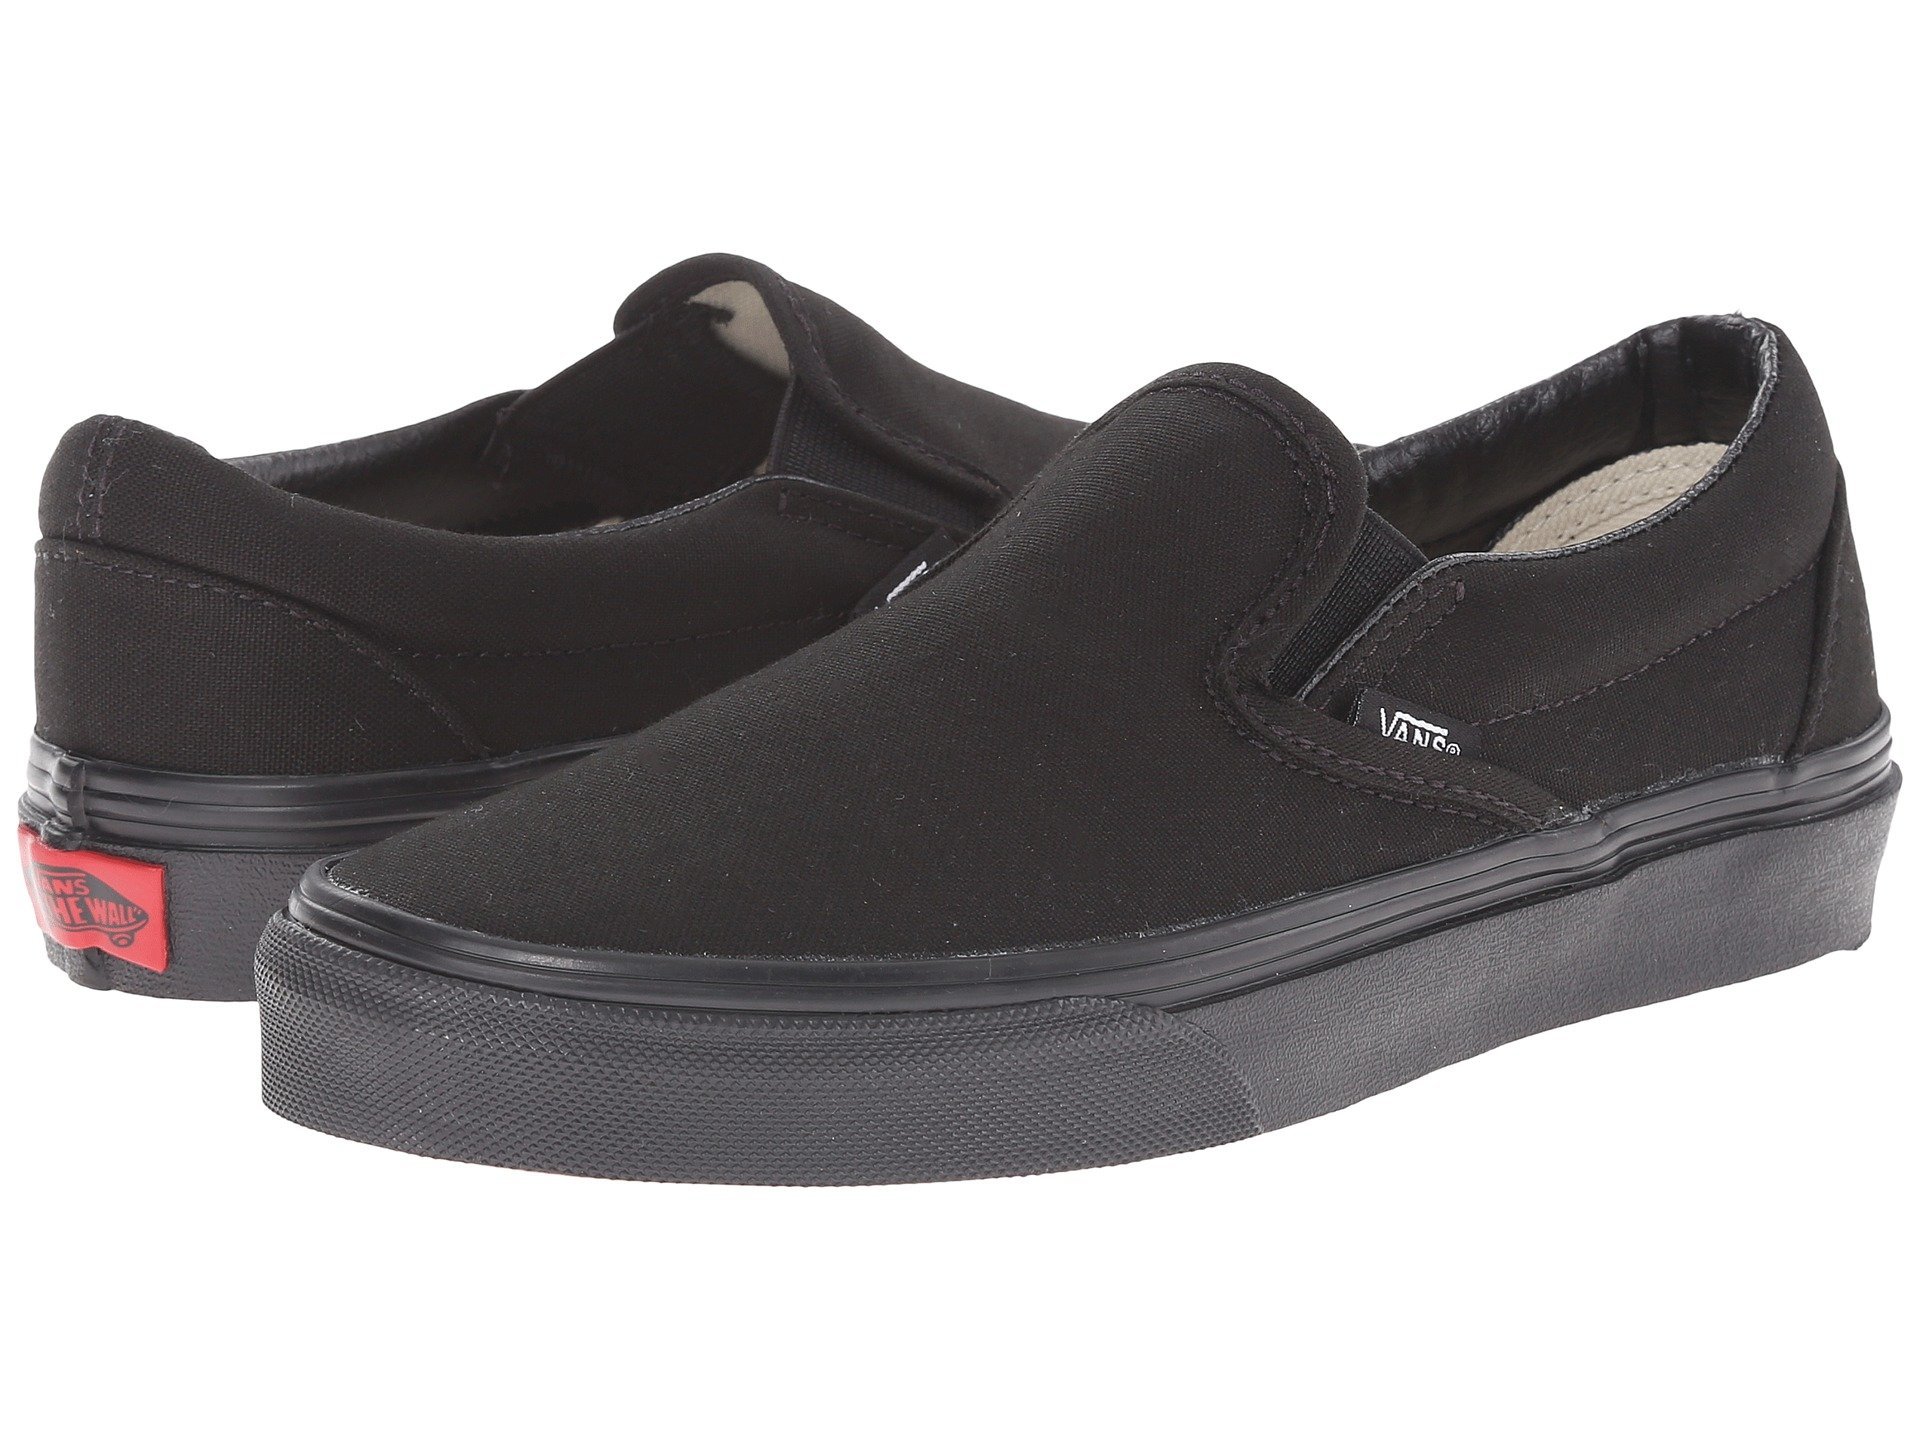 Vans Unisex Checkerboard Slip-On Black/Off White Check VN000EYEBWW Skate Shoes